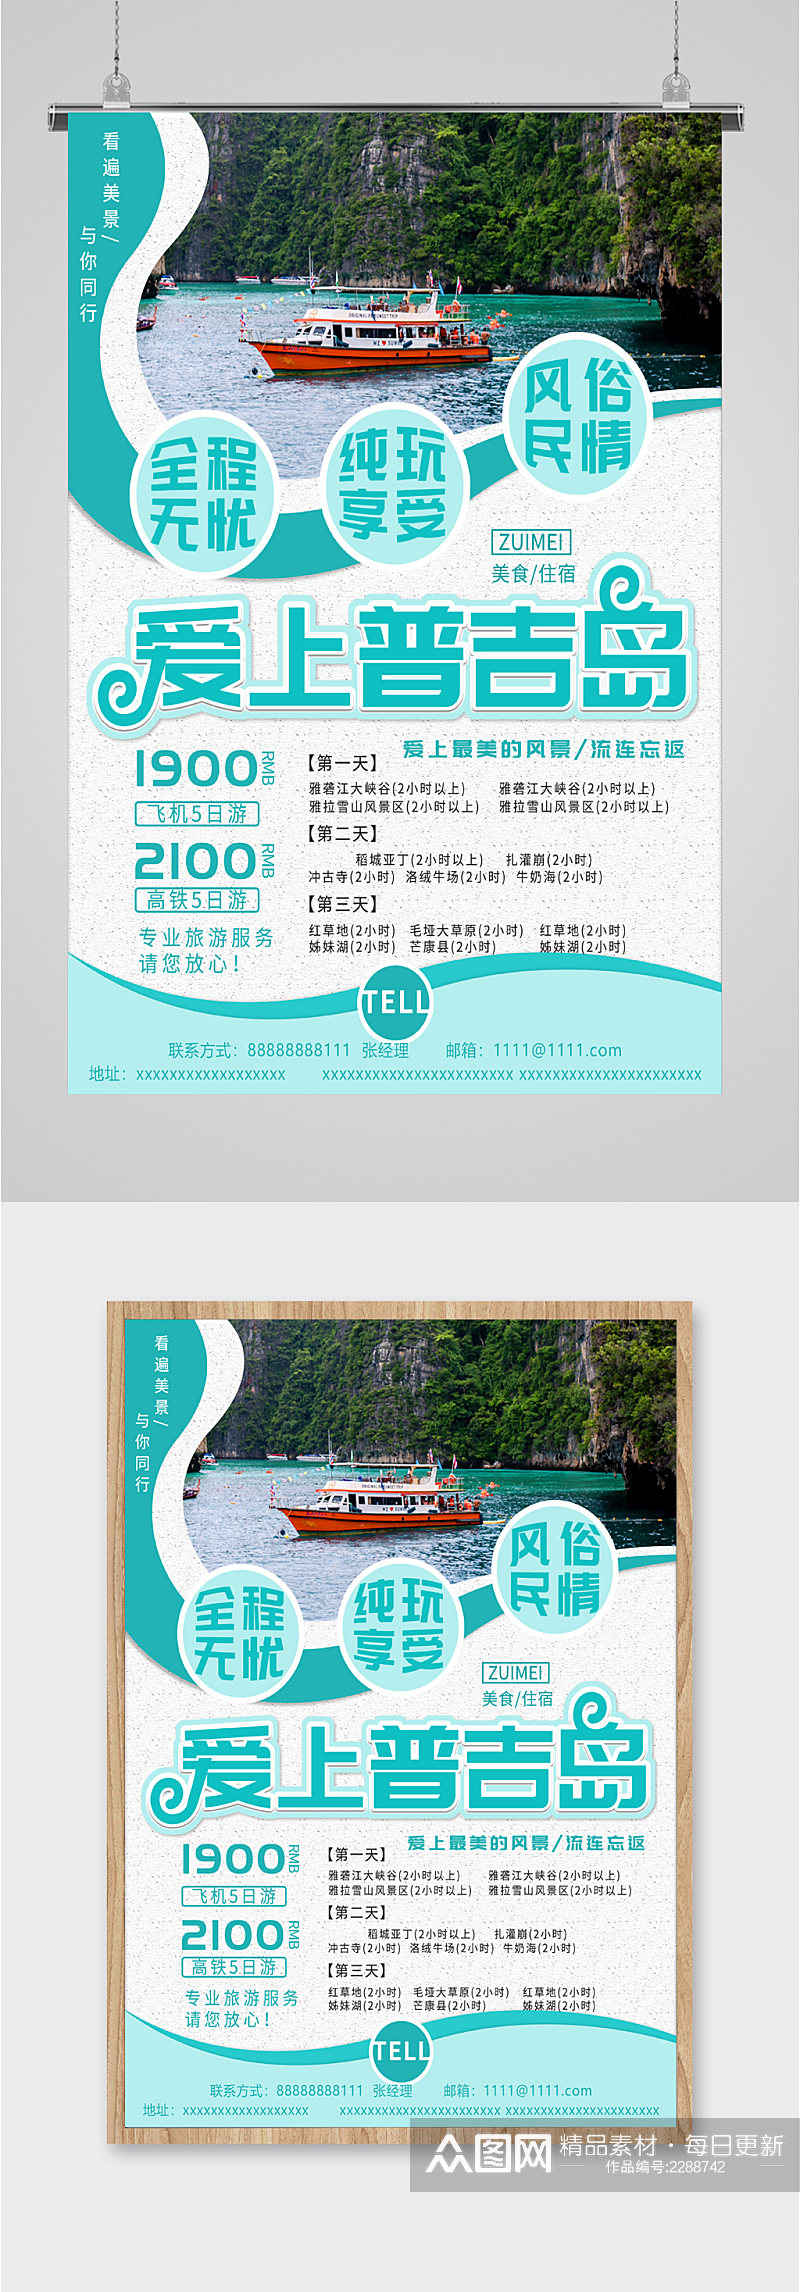 爱上普吉岛旅游海报素材